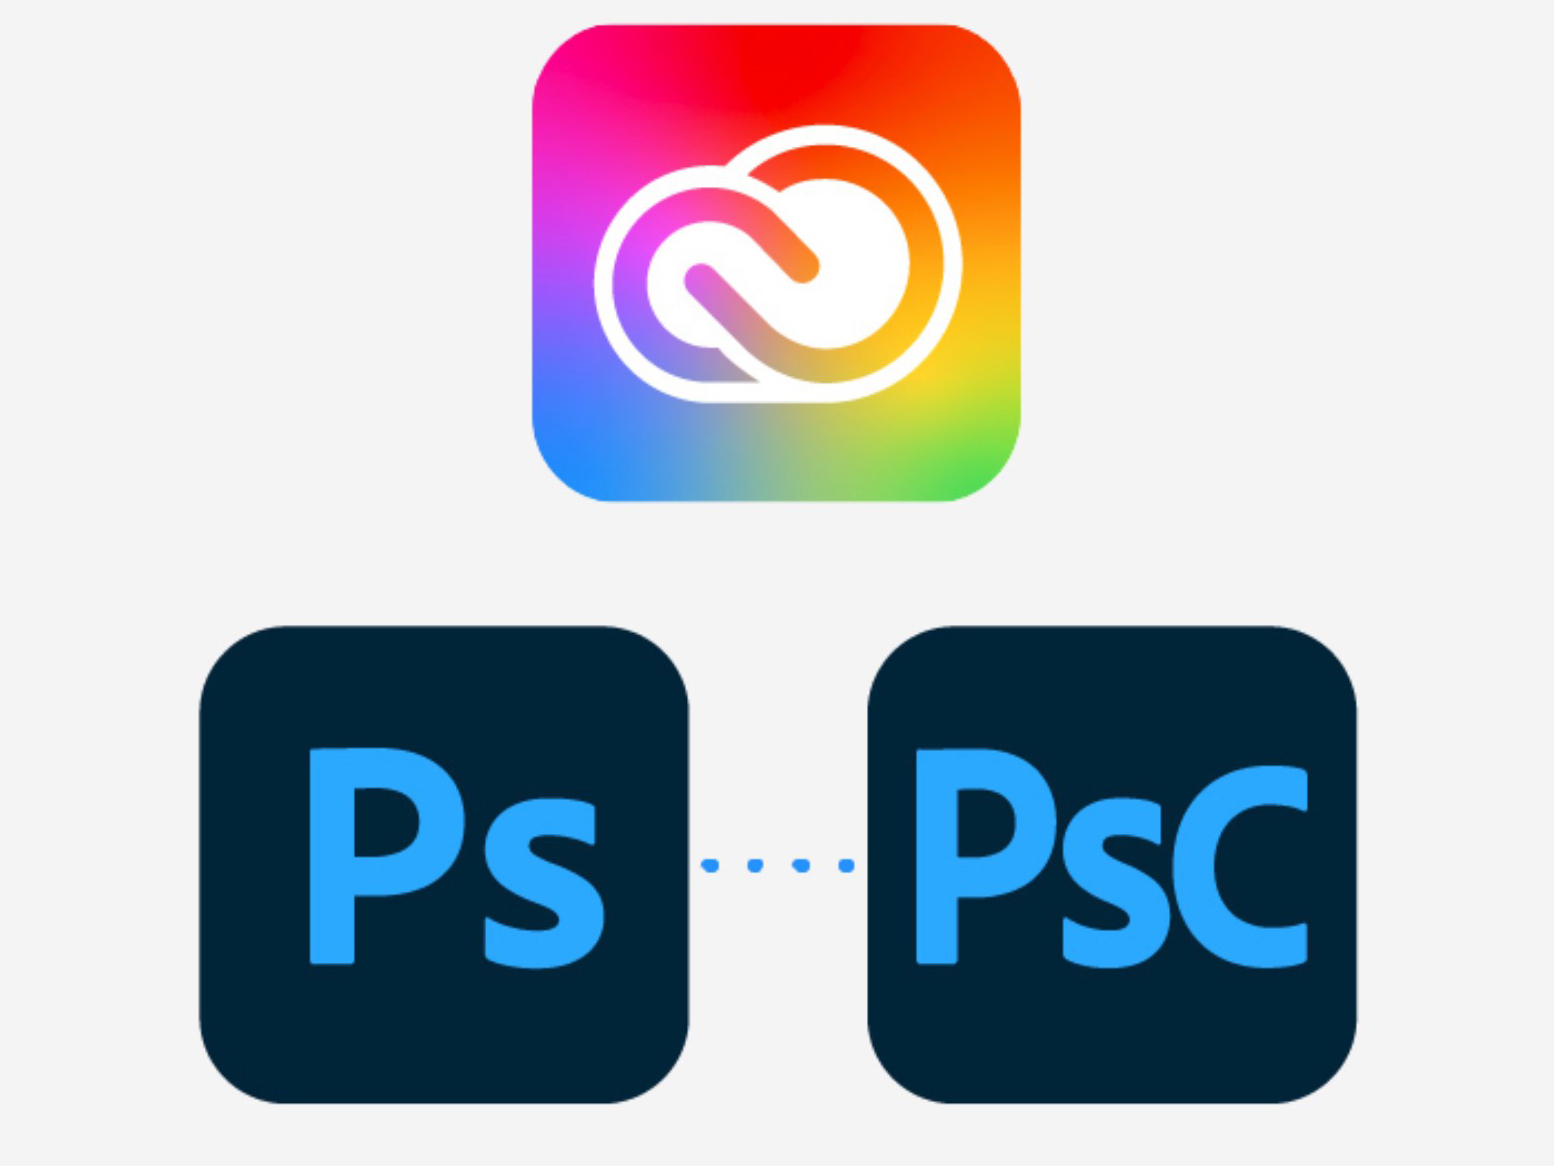 Adobe thay đổi logo cho các ứng dụng của mình